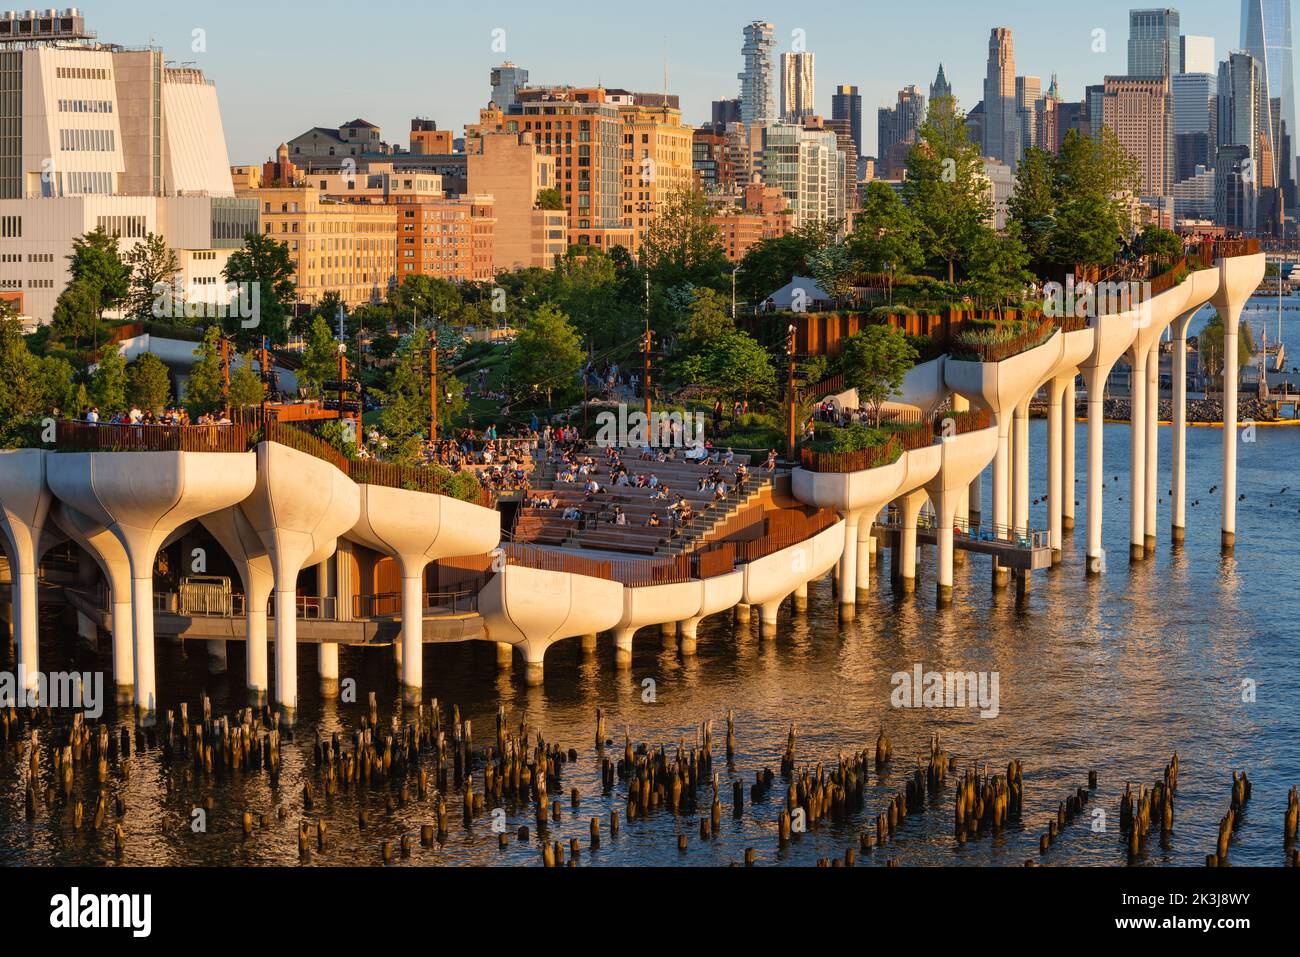 New York, parc public de Little Island au coucher du soleil. Parc surélevé avec amphithéâtre au Hudson River Park (Pier 55), West Village, Manhattan Banque D'Images